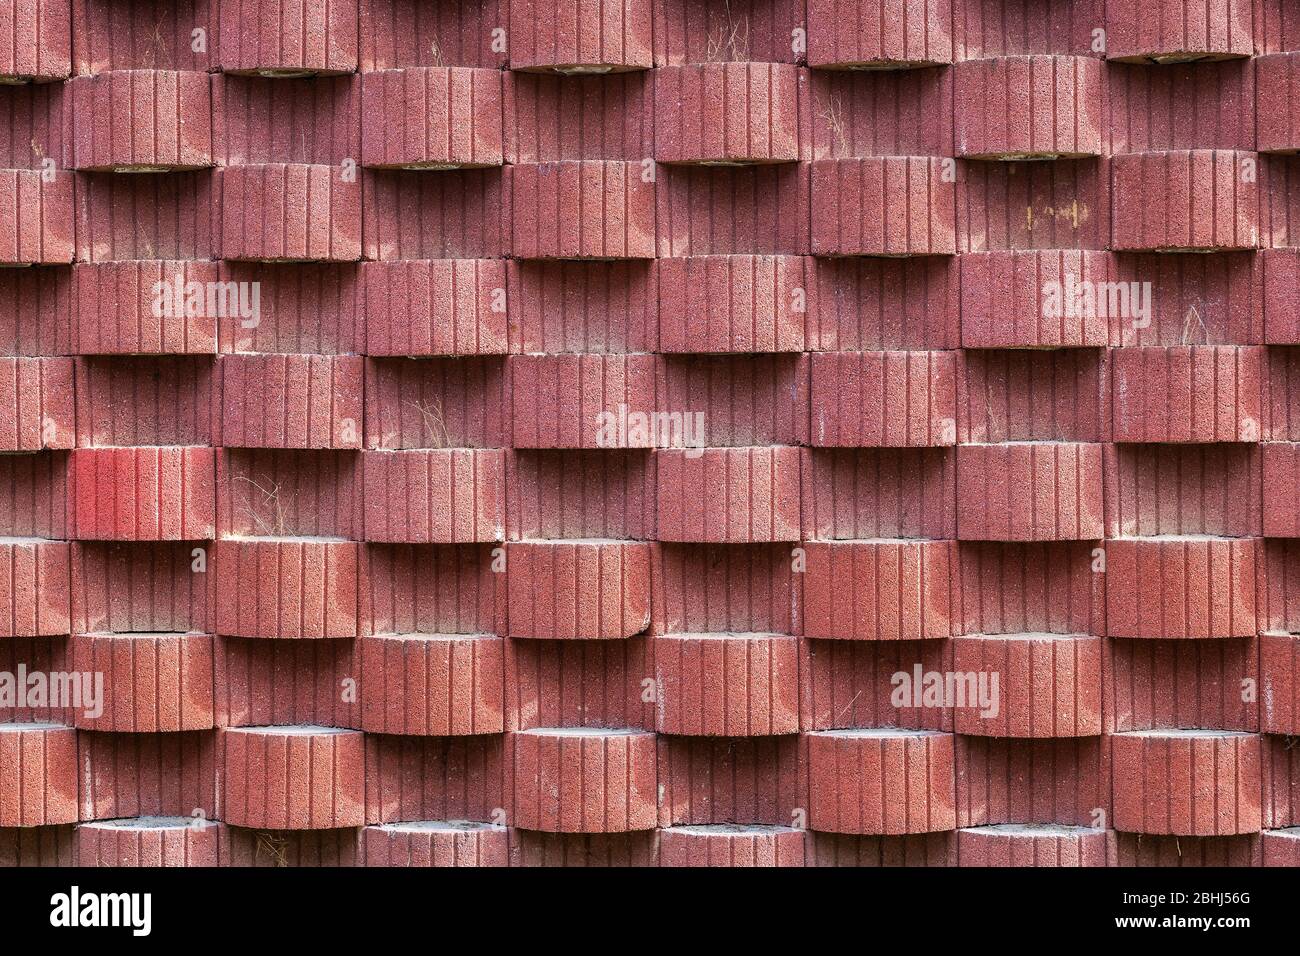 Abstrakt rötlichen Wand Hintergrund mit Muster von hervorstehenden und konkaven abwechselnden ovalen Formen und gerillten vertikalen Linien Stockfoto